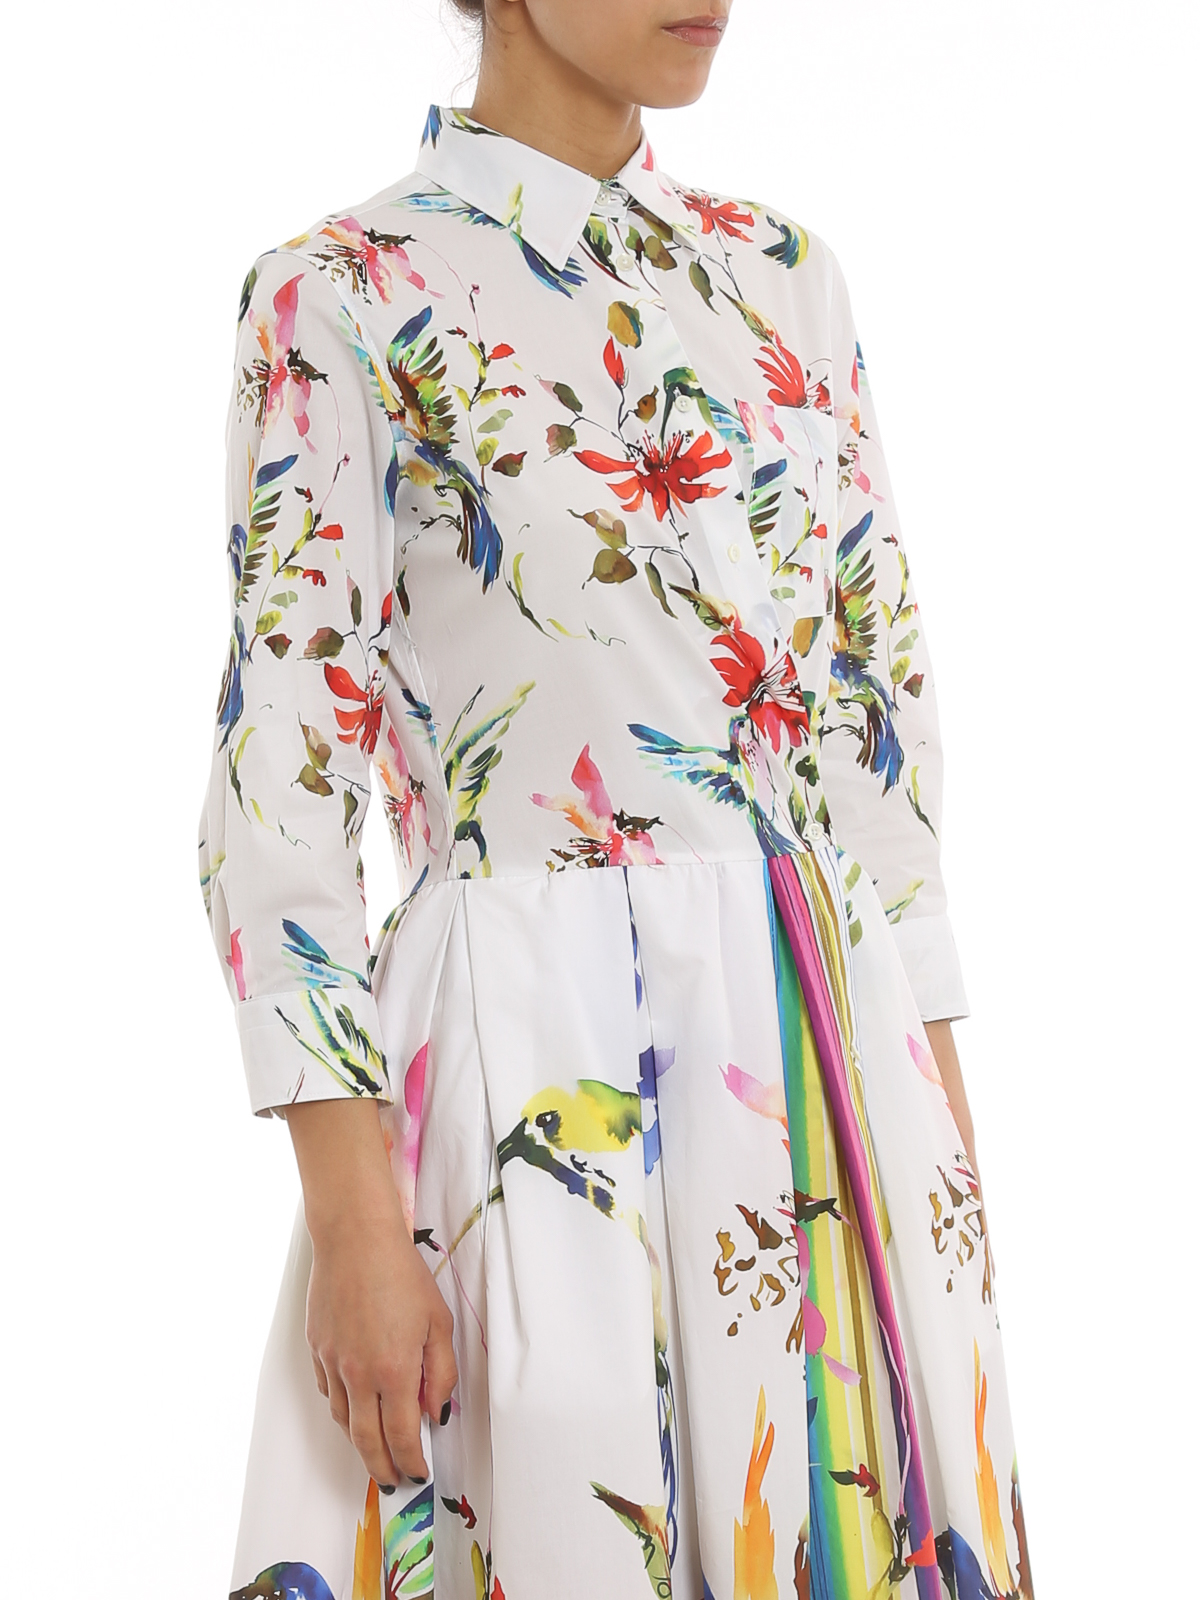 Gewoon Treble hanger Maxi dresses Sara Roka - Elena dress - ELENAT9631A | Shop online at iKRIX